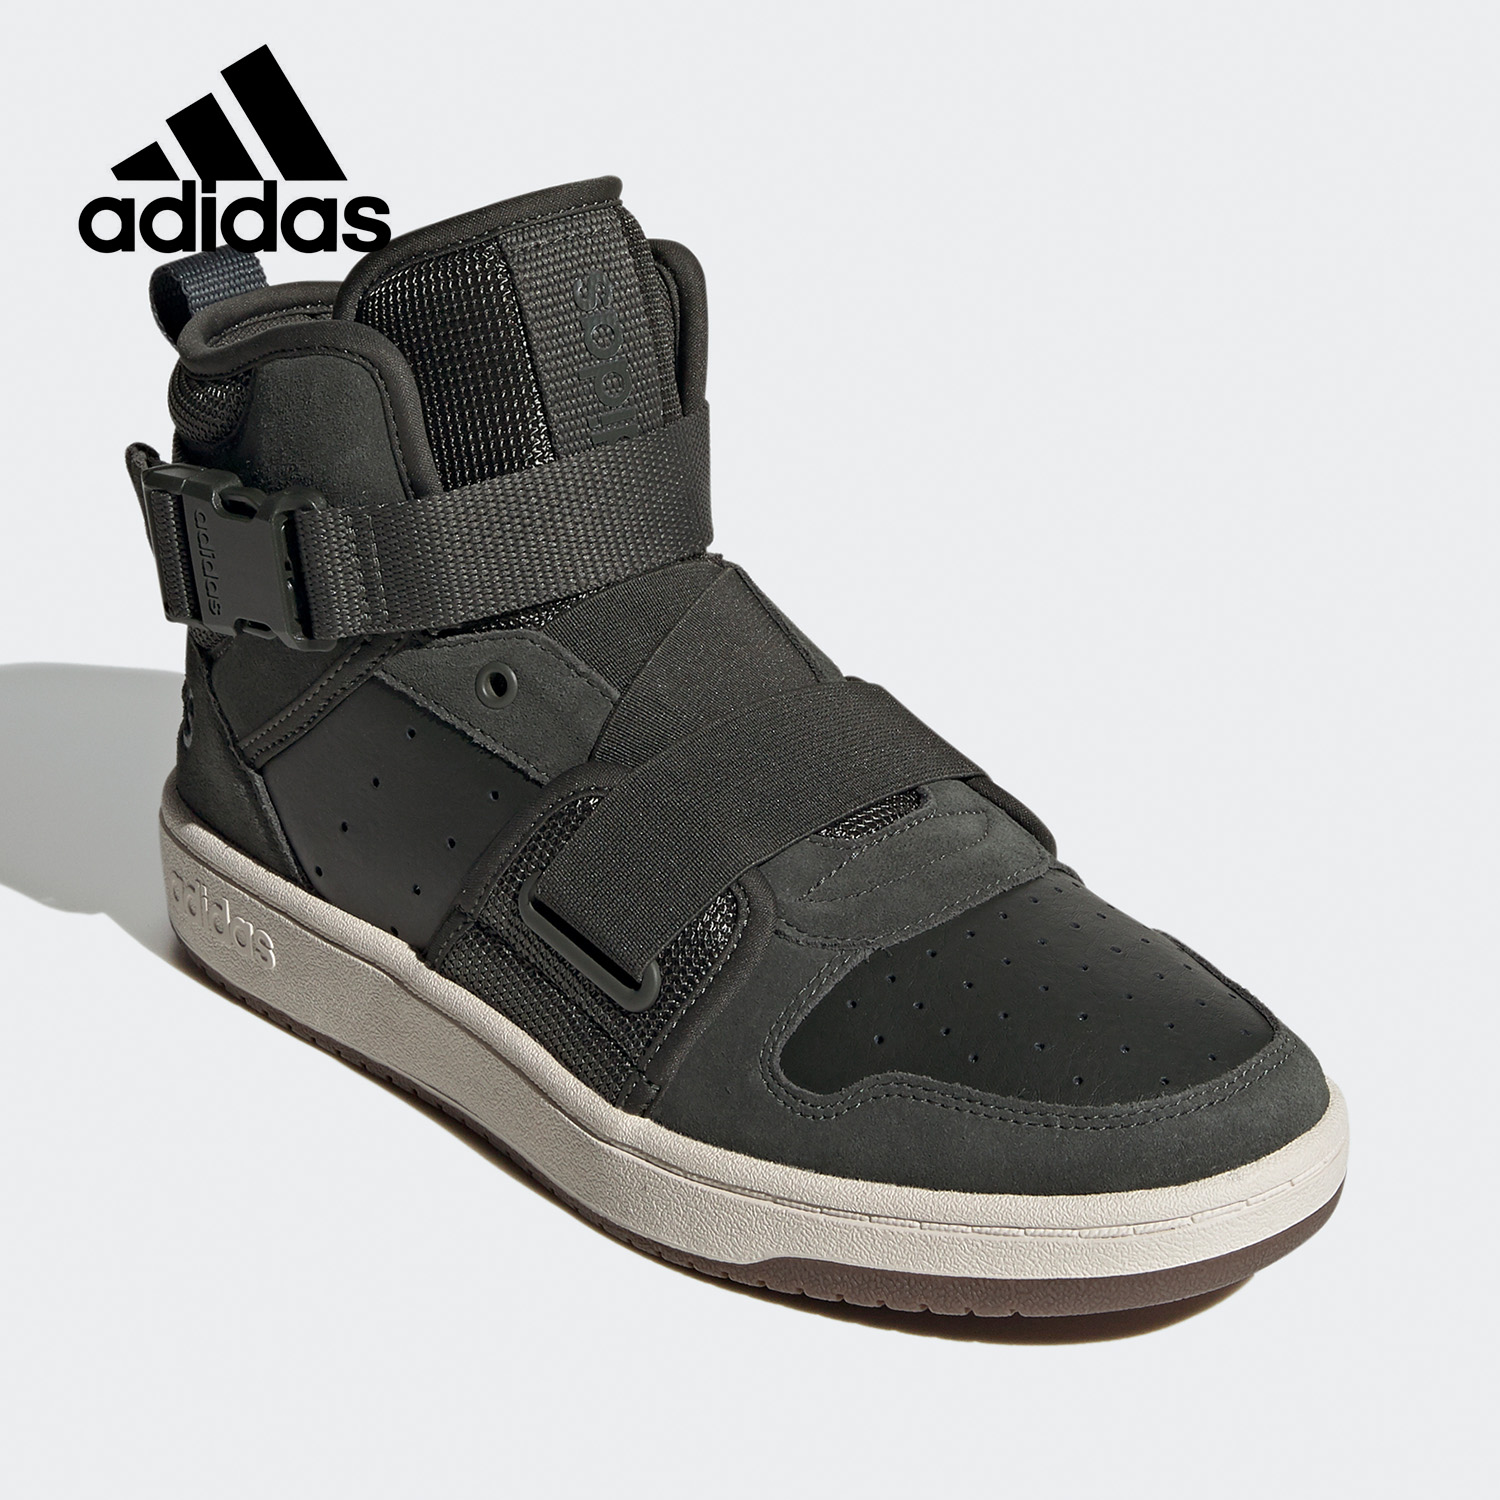 Adidas/阿迪达斯正品秋季新款男鞋女鞋高帮运动训练休闲鞋 FX8997